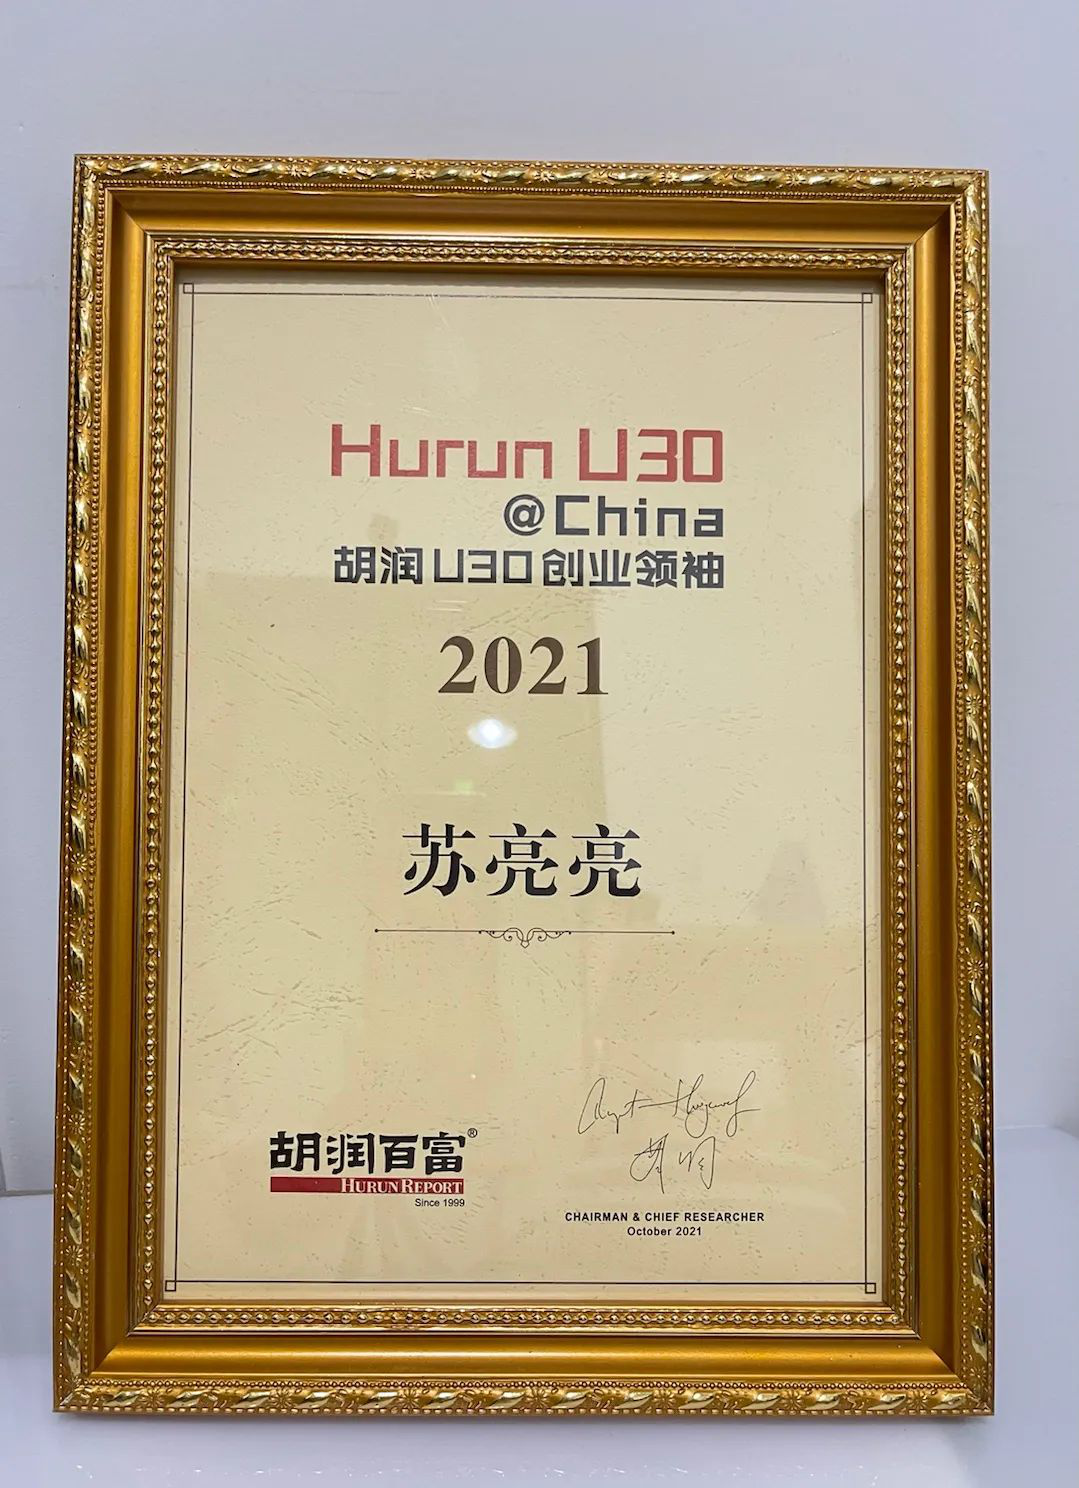 胡润百富《2021胡润U30中国创业领袖》榜单发布，宇泛两人荣登！